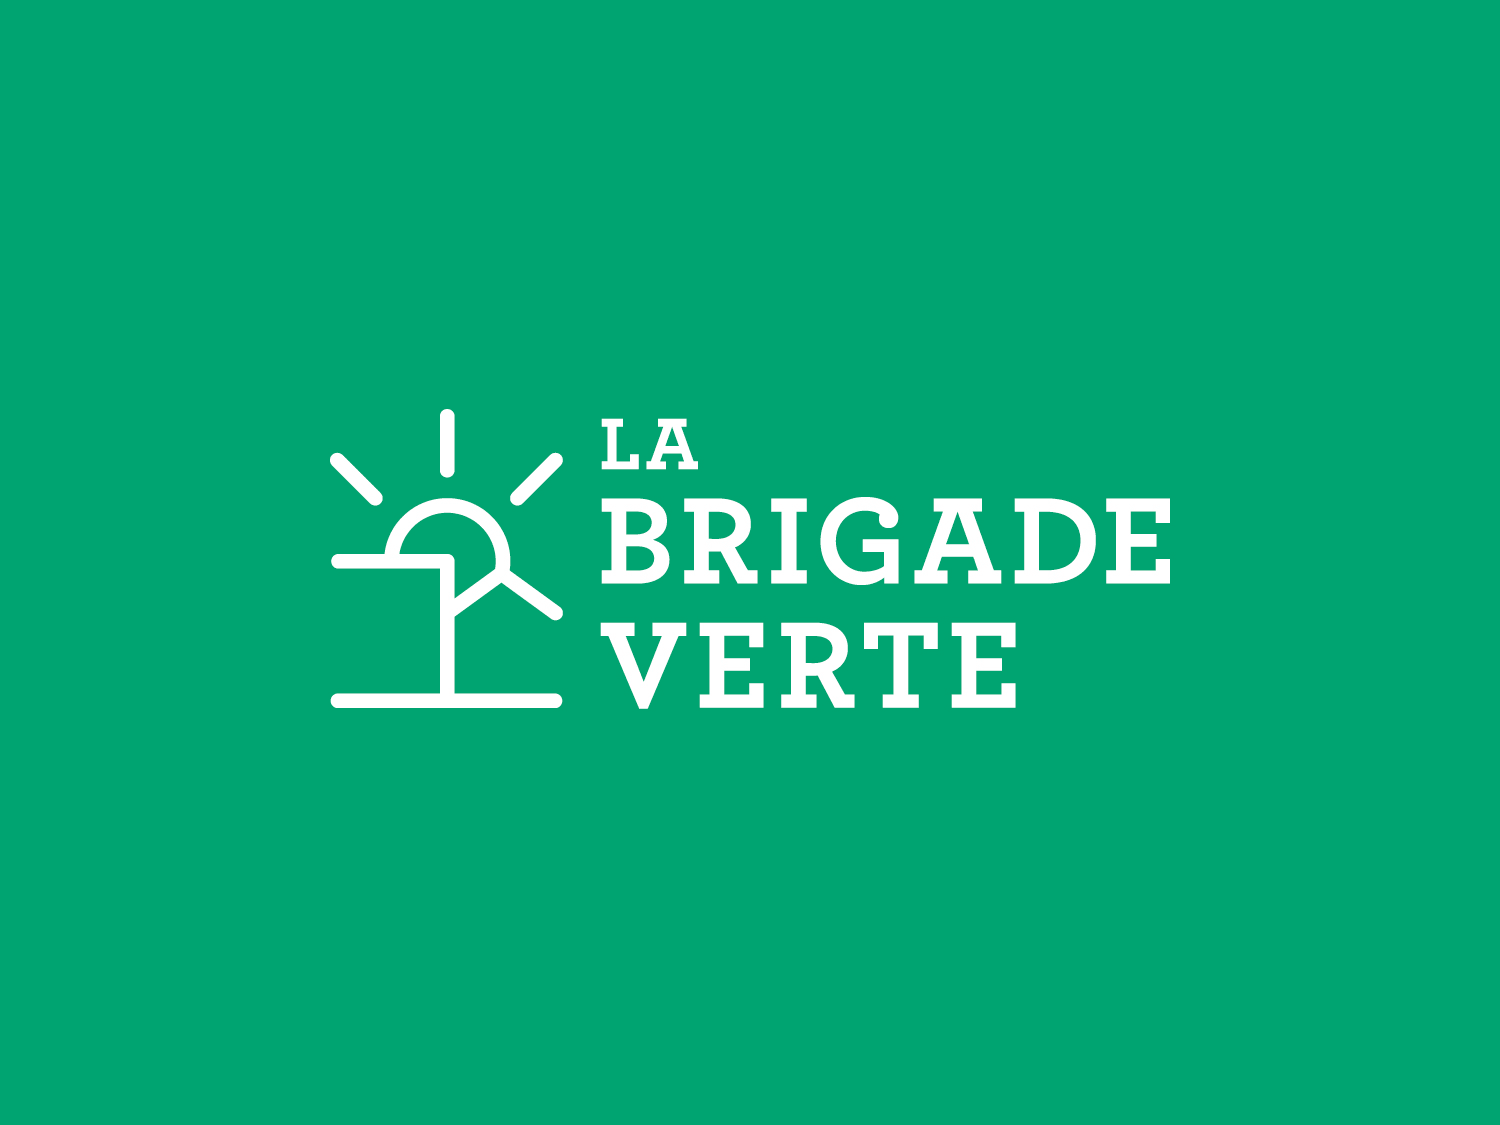 La brigade verte logo